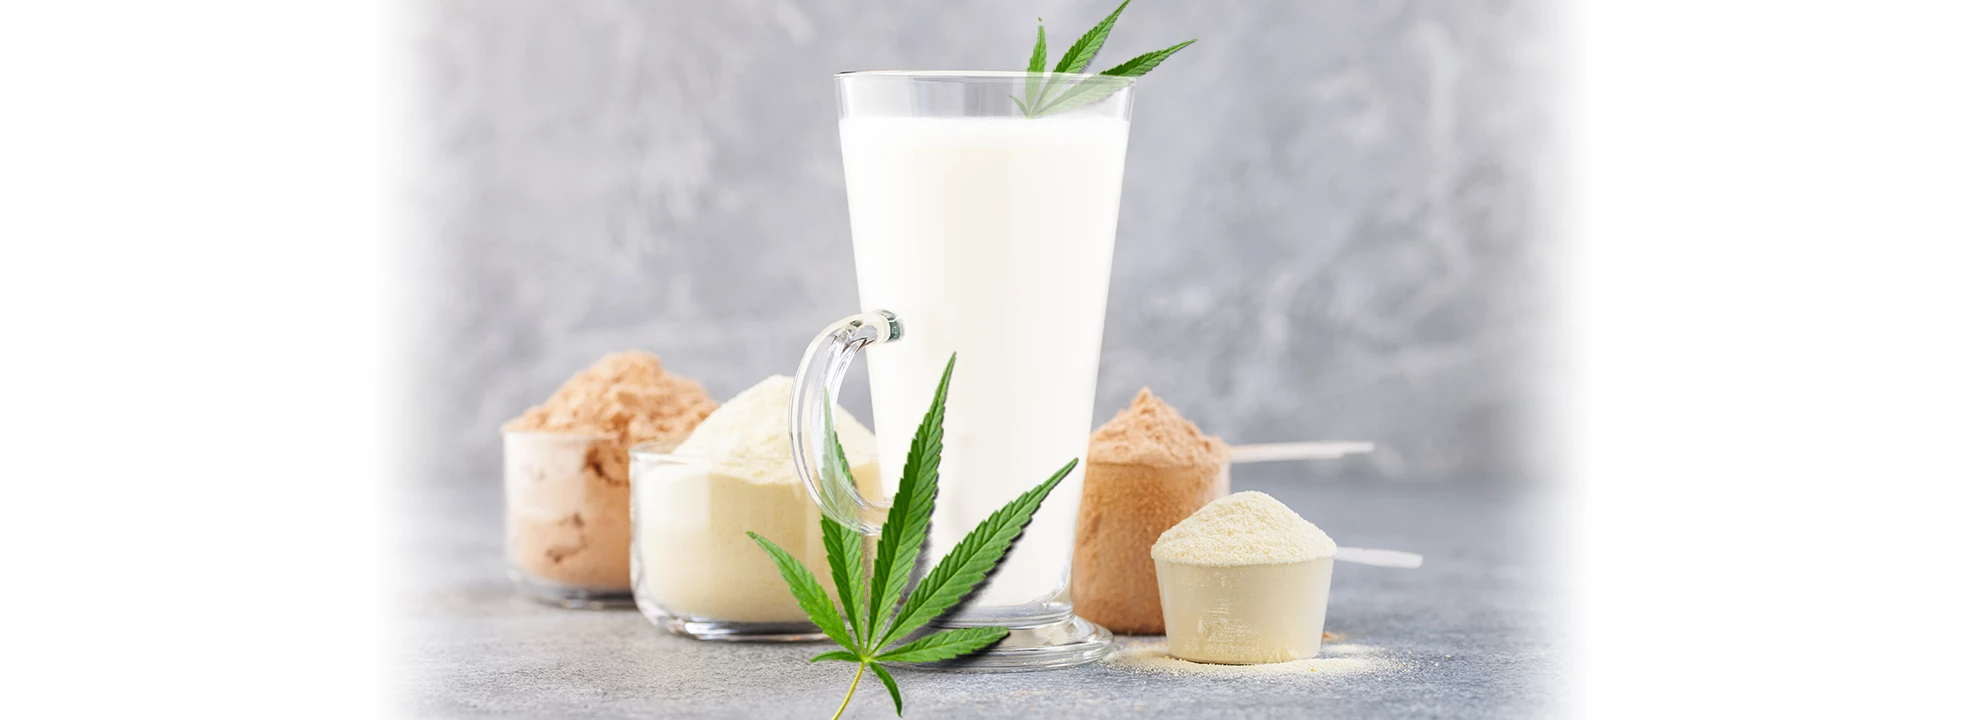 Peut-on mélanger de la whey protéine avec du lait végétal?